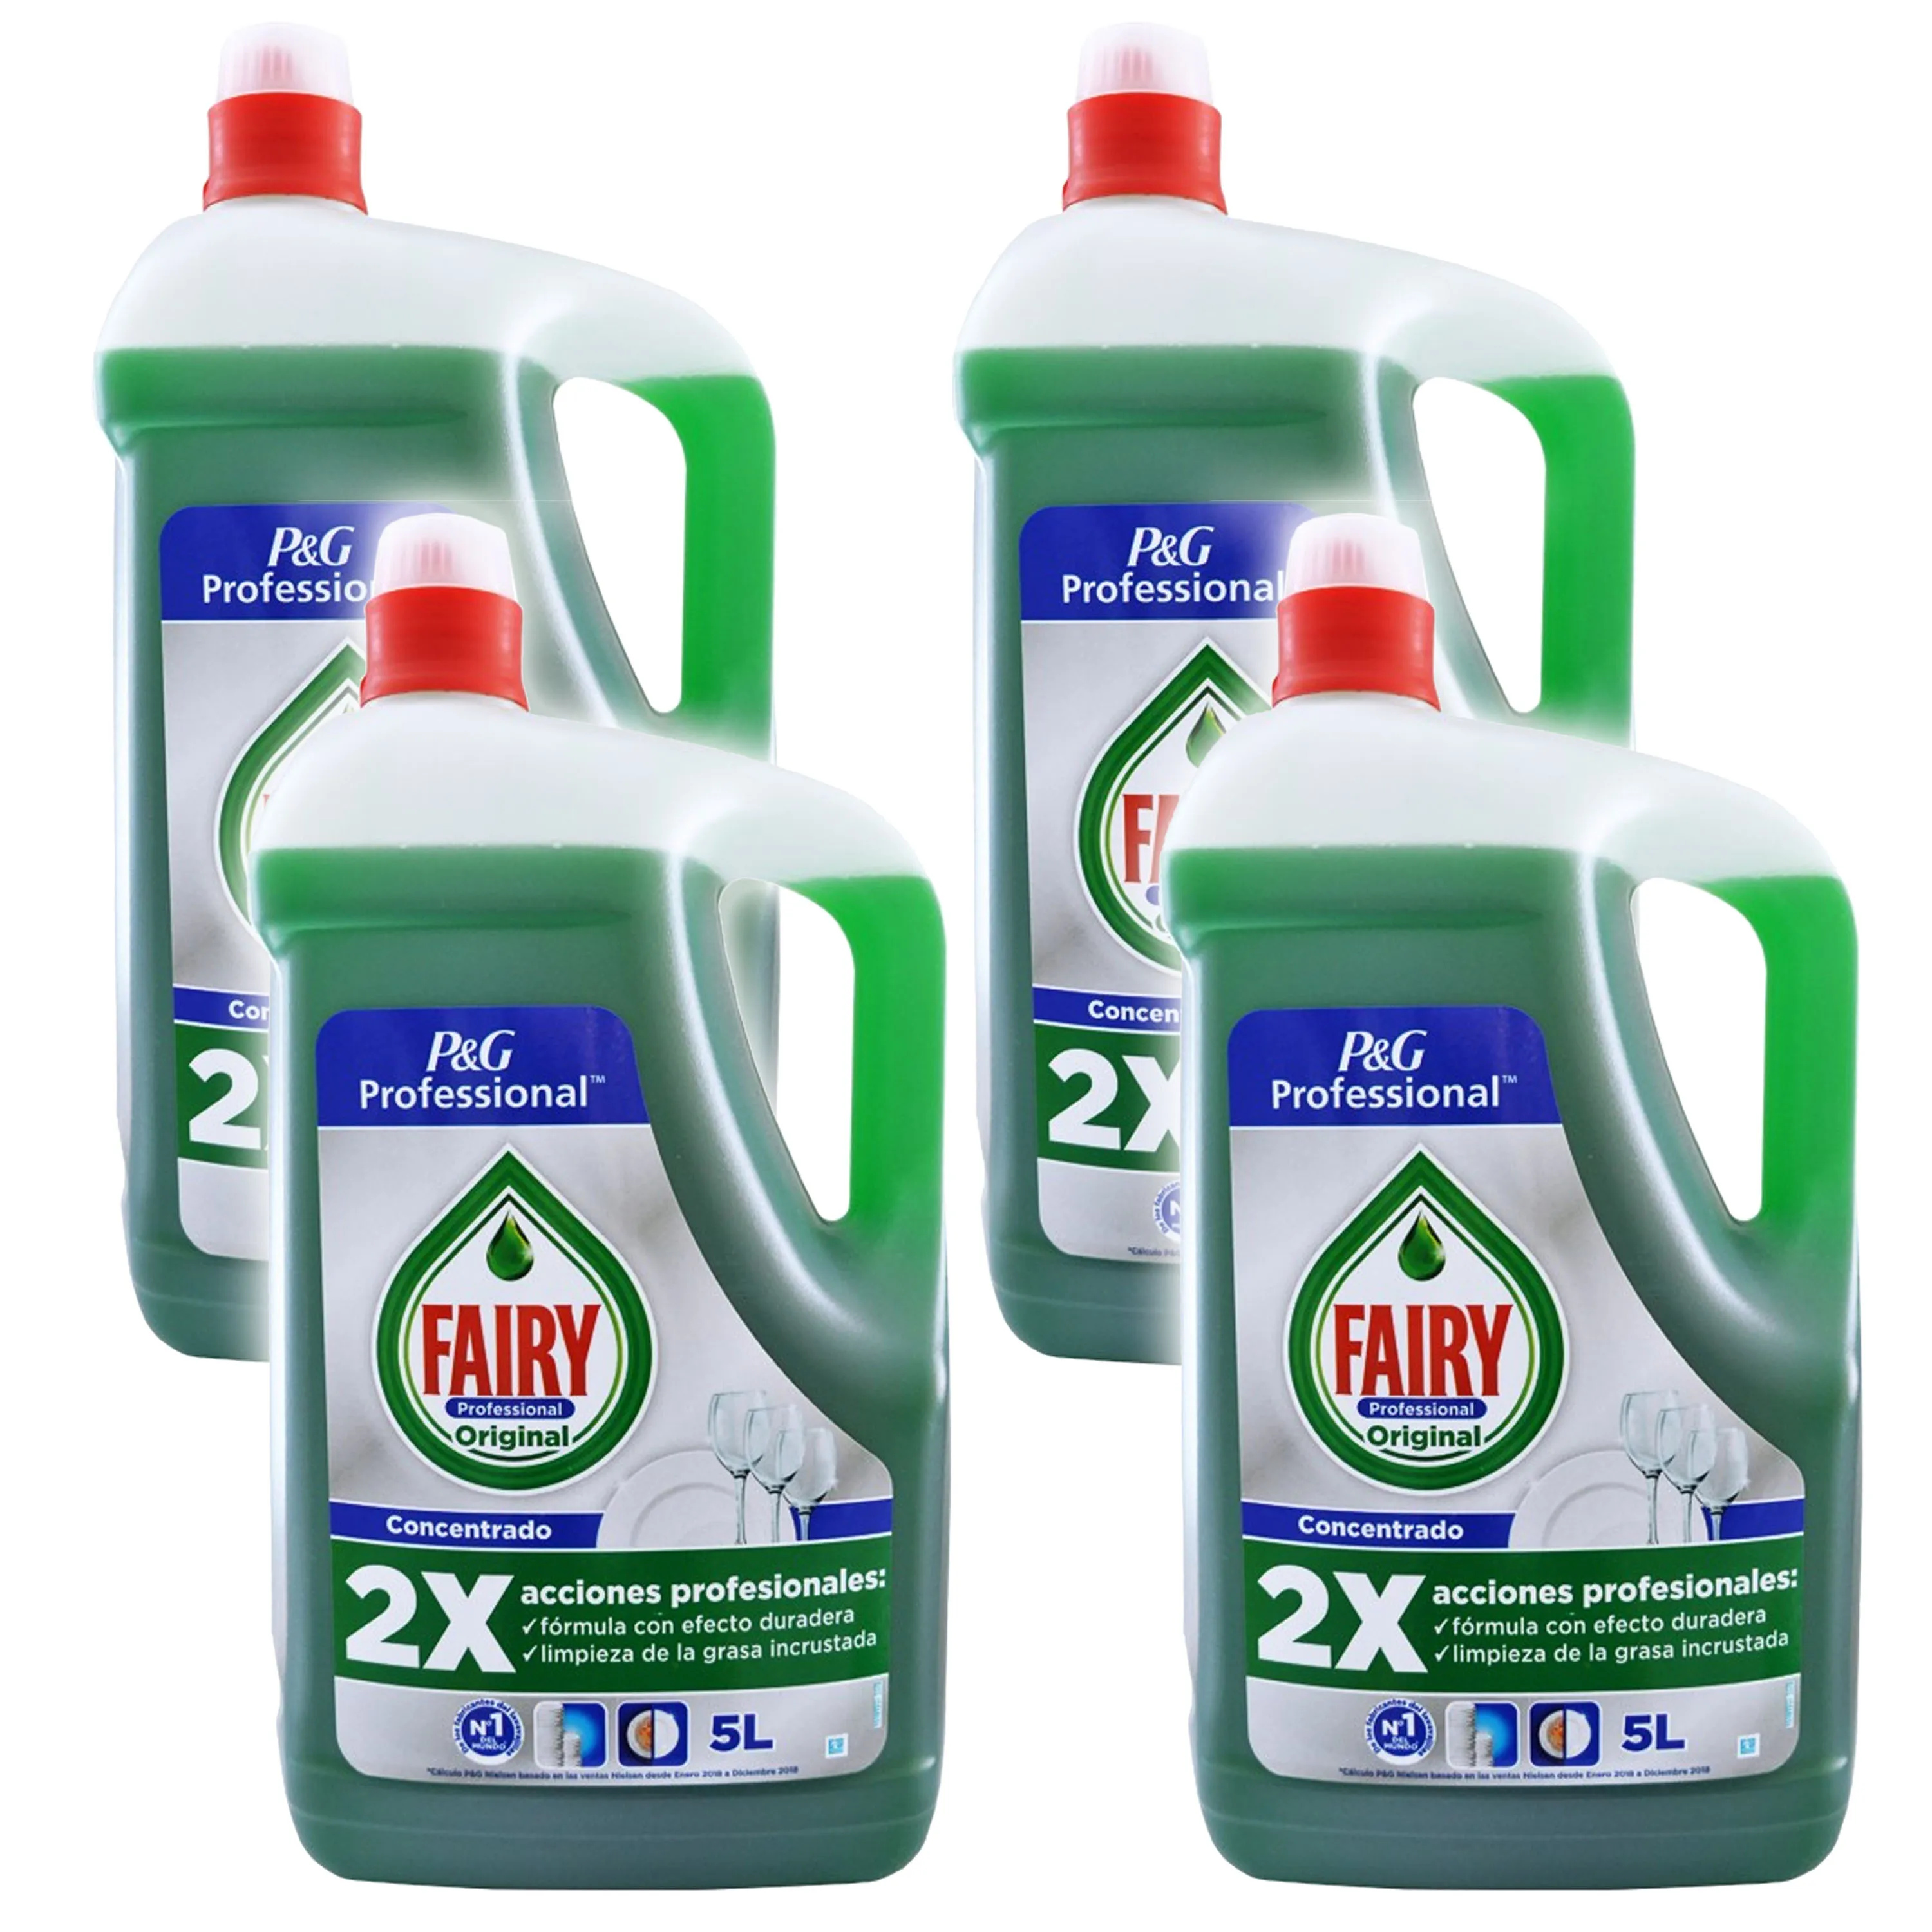 Detergente Liquido para Vajilla FAIRY Original 5 Litros entrega 24h Lavavajillas Vajillas Lavar 2X Doble Dishwasher AliExpress